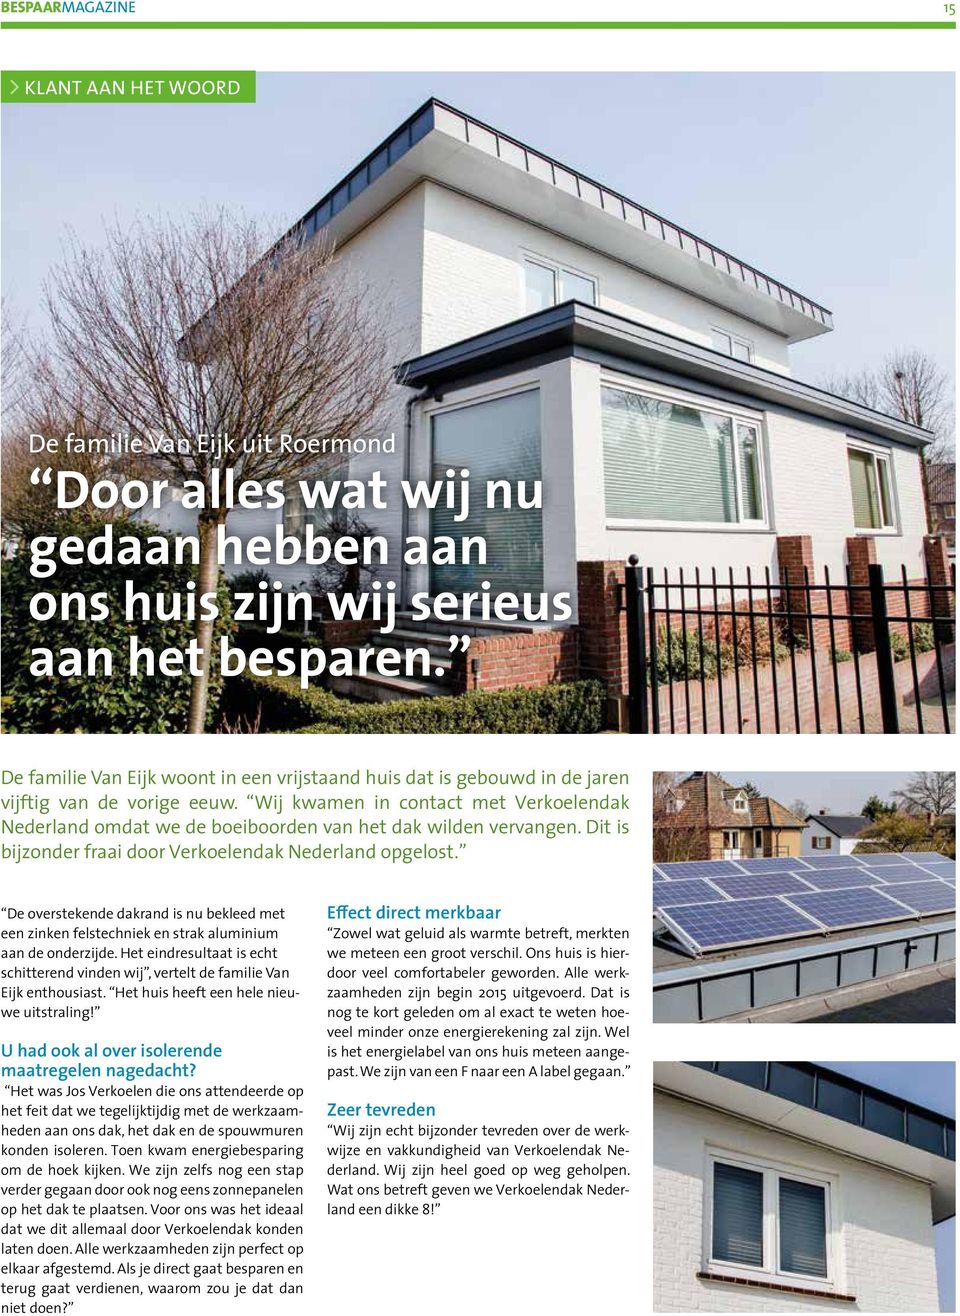 Wij kwamen in contact met Verkoelendak Nederland omdat we de boeiboorden van het dak wilden vervangen. Dit is bijzonder fraai door Verkoelendak Nederland opgelost.